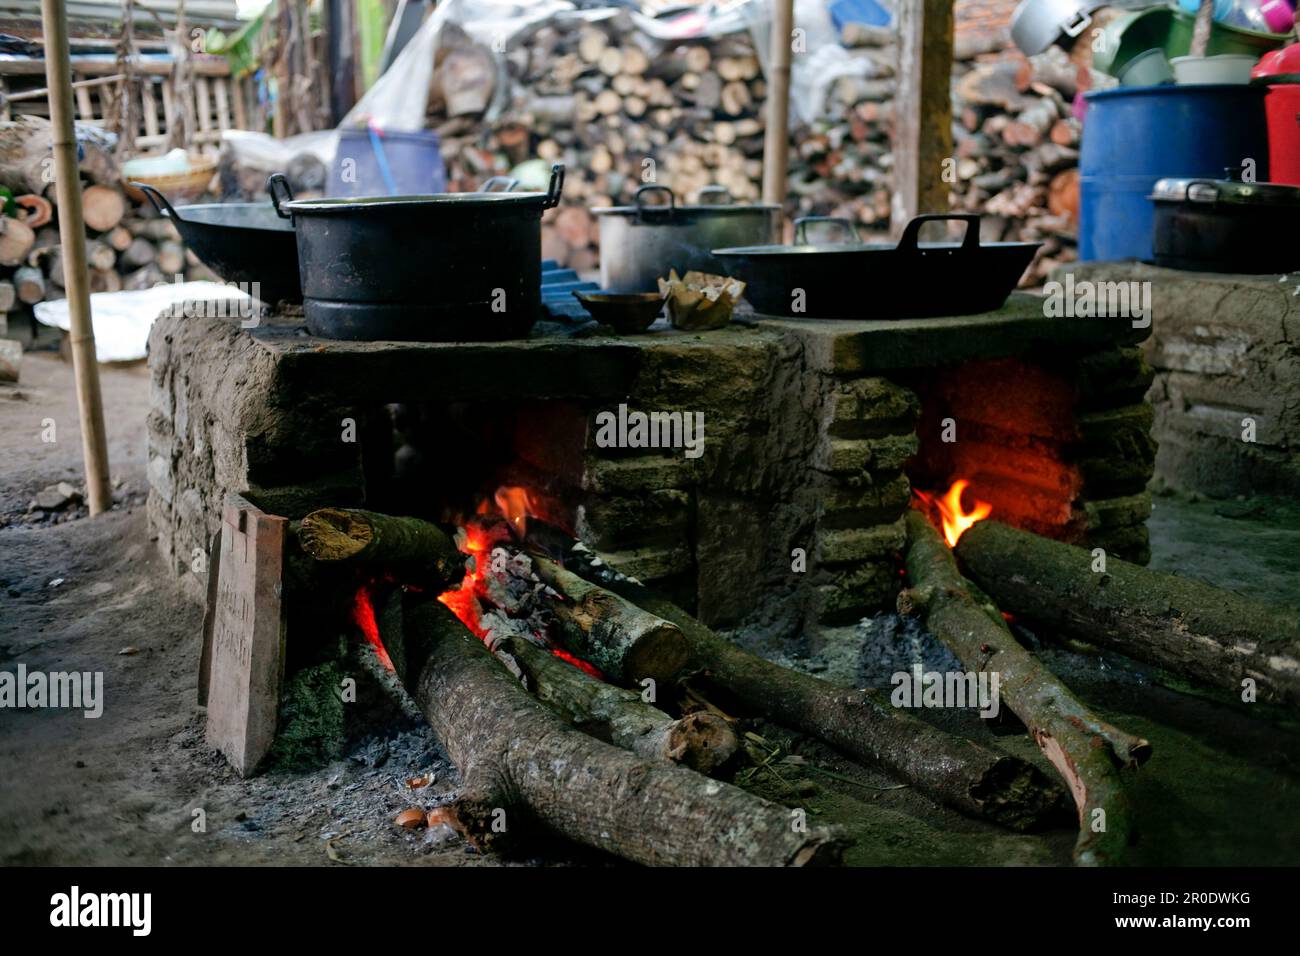 Cucina rurale. Stufe tradizionali usate dai residenti in Indonesia rurale, fatte di argilla, rifornito con legno, cucinare cibo sul suolo stufa con i residui secchi e. Foto Stock